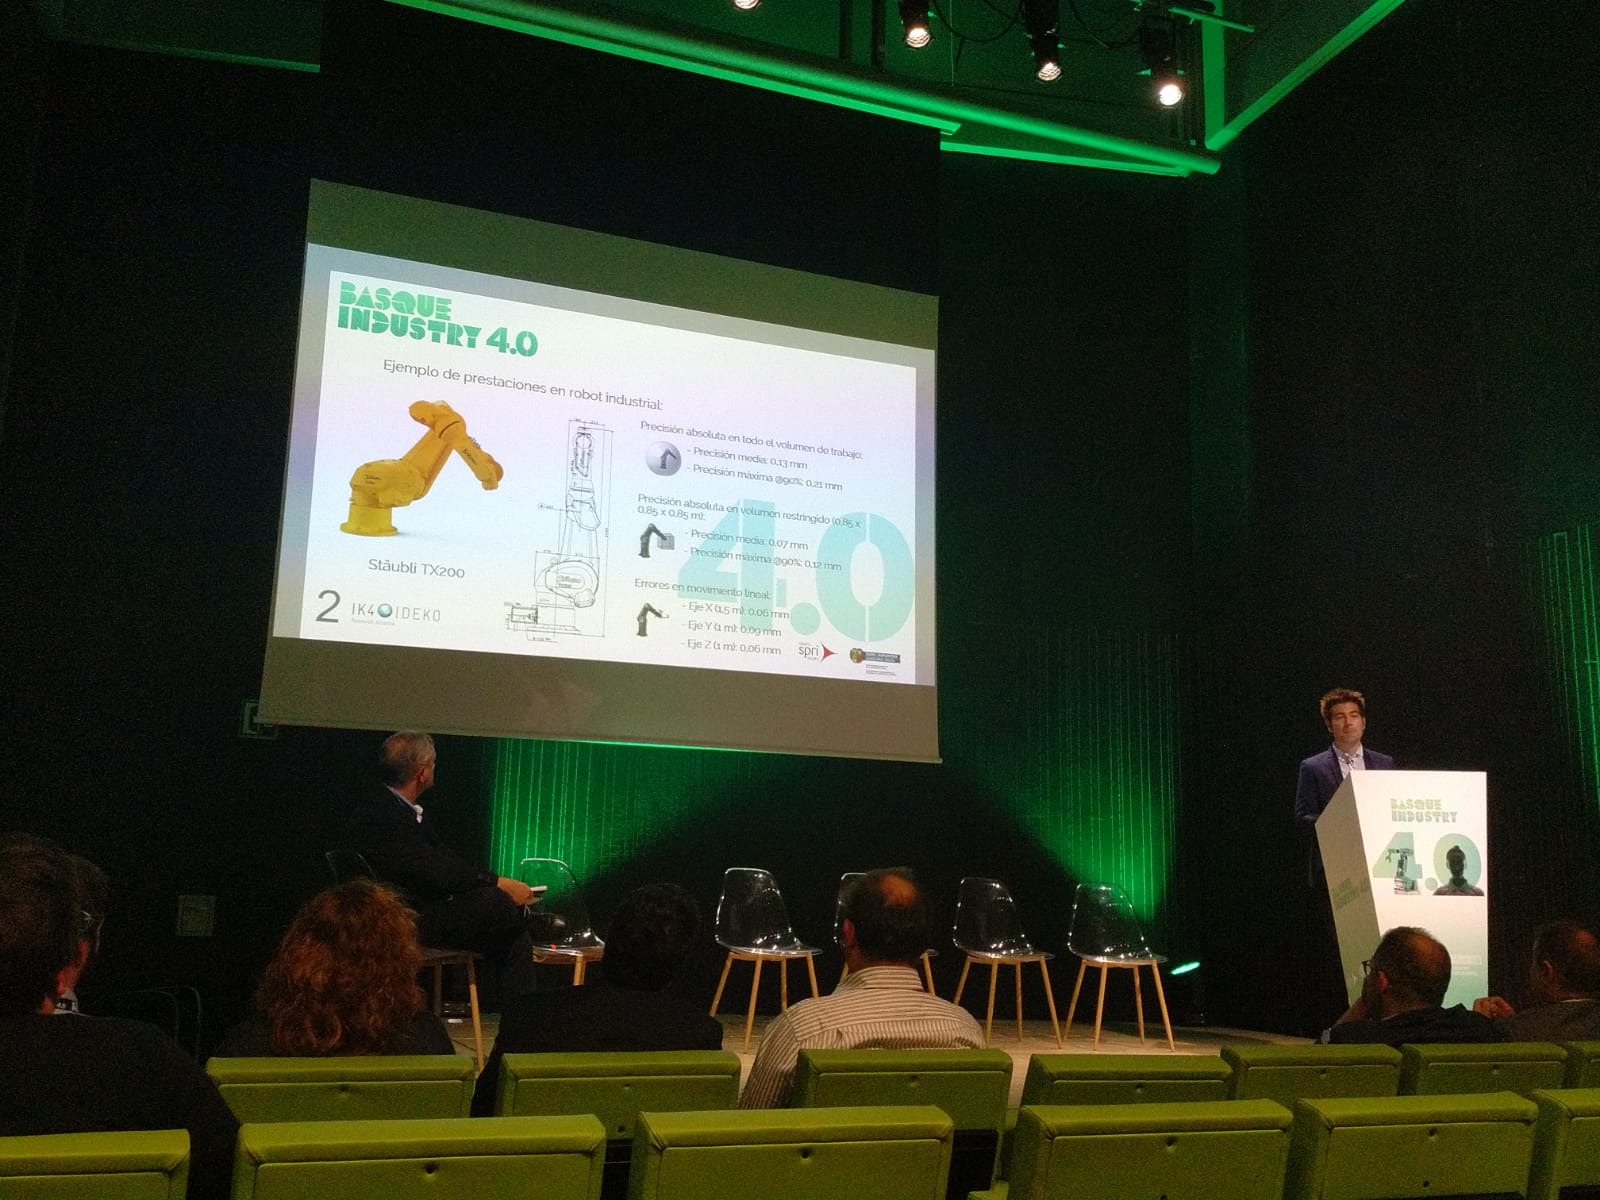 IK4-IDEKO participa en Basque Industry 4.0